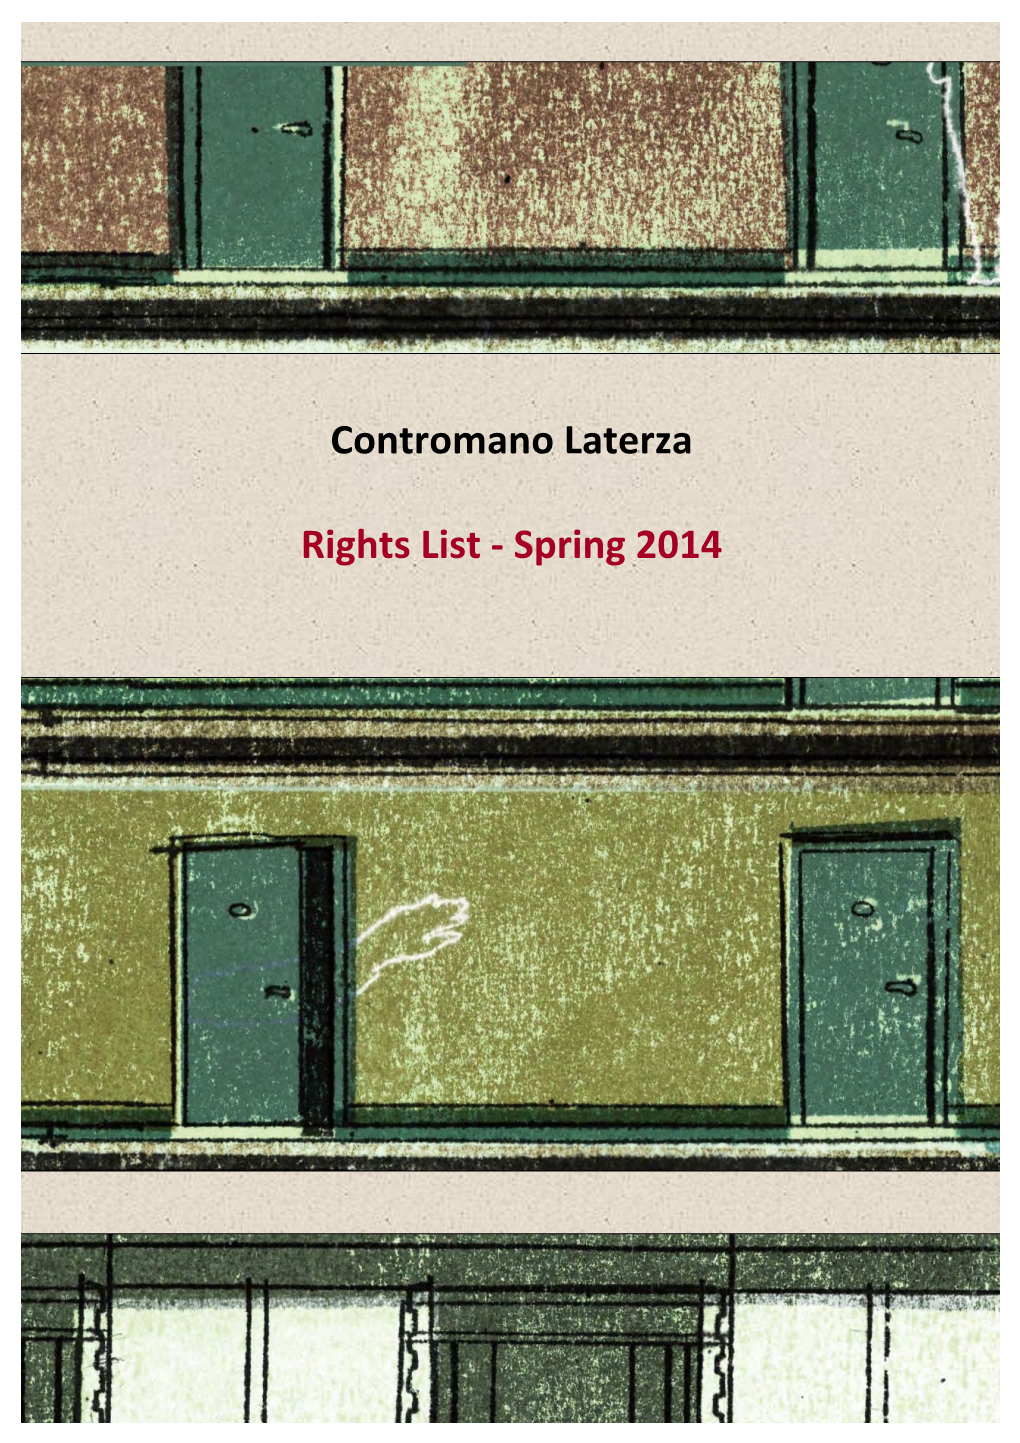 Contromano Laterza Rights List